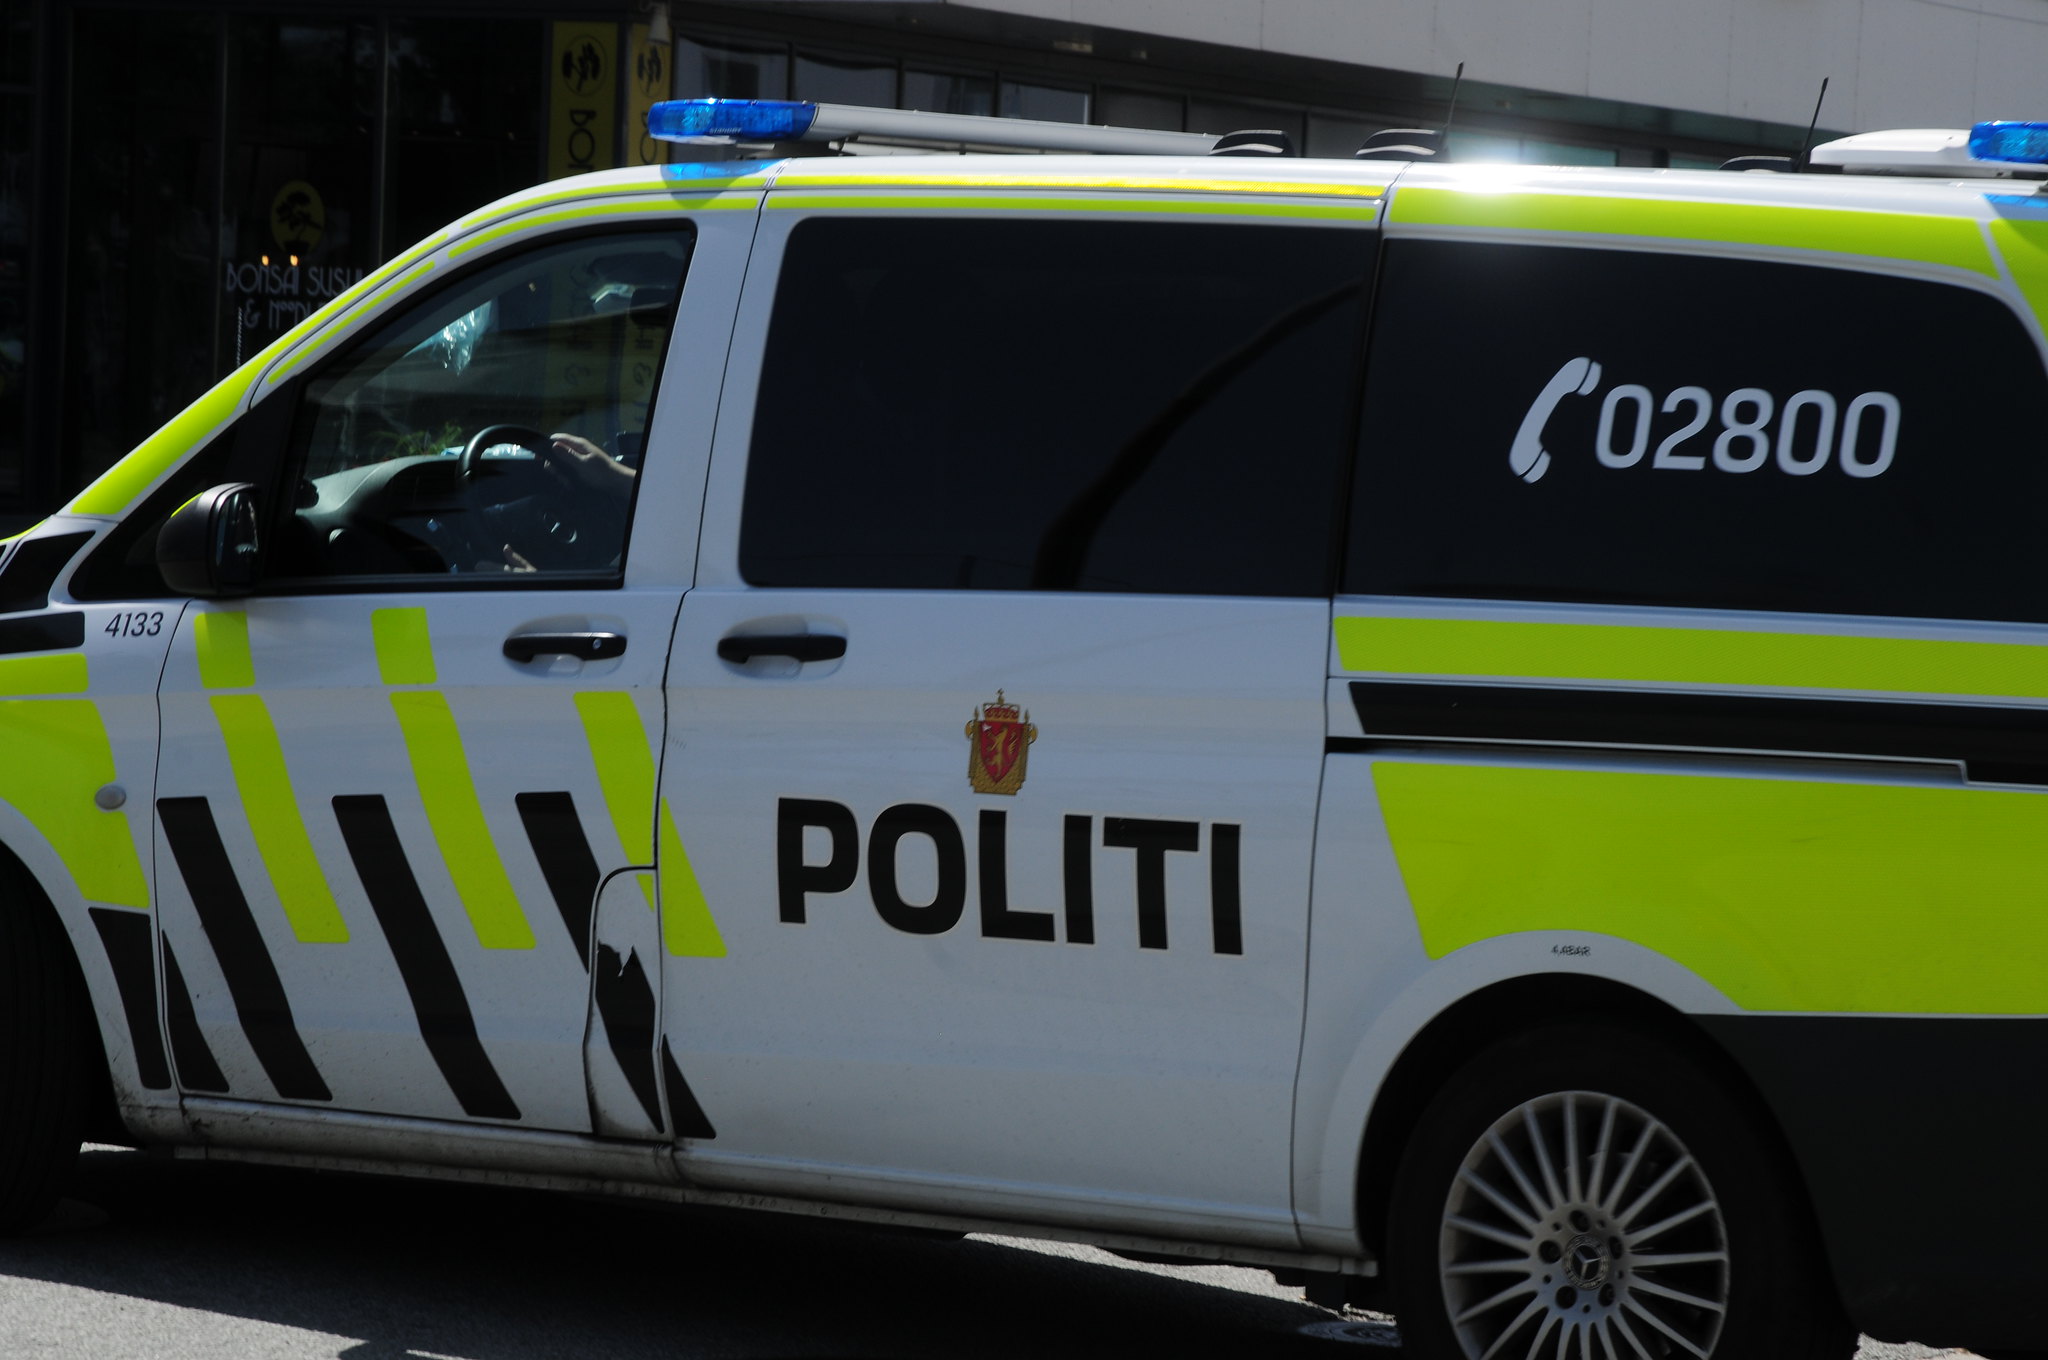 Politikvinna Linn Rosenlund fekk bot for å ha gitt opplysningar frå politiets dataystem til naboar